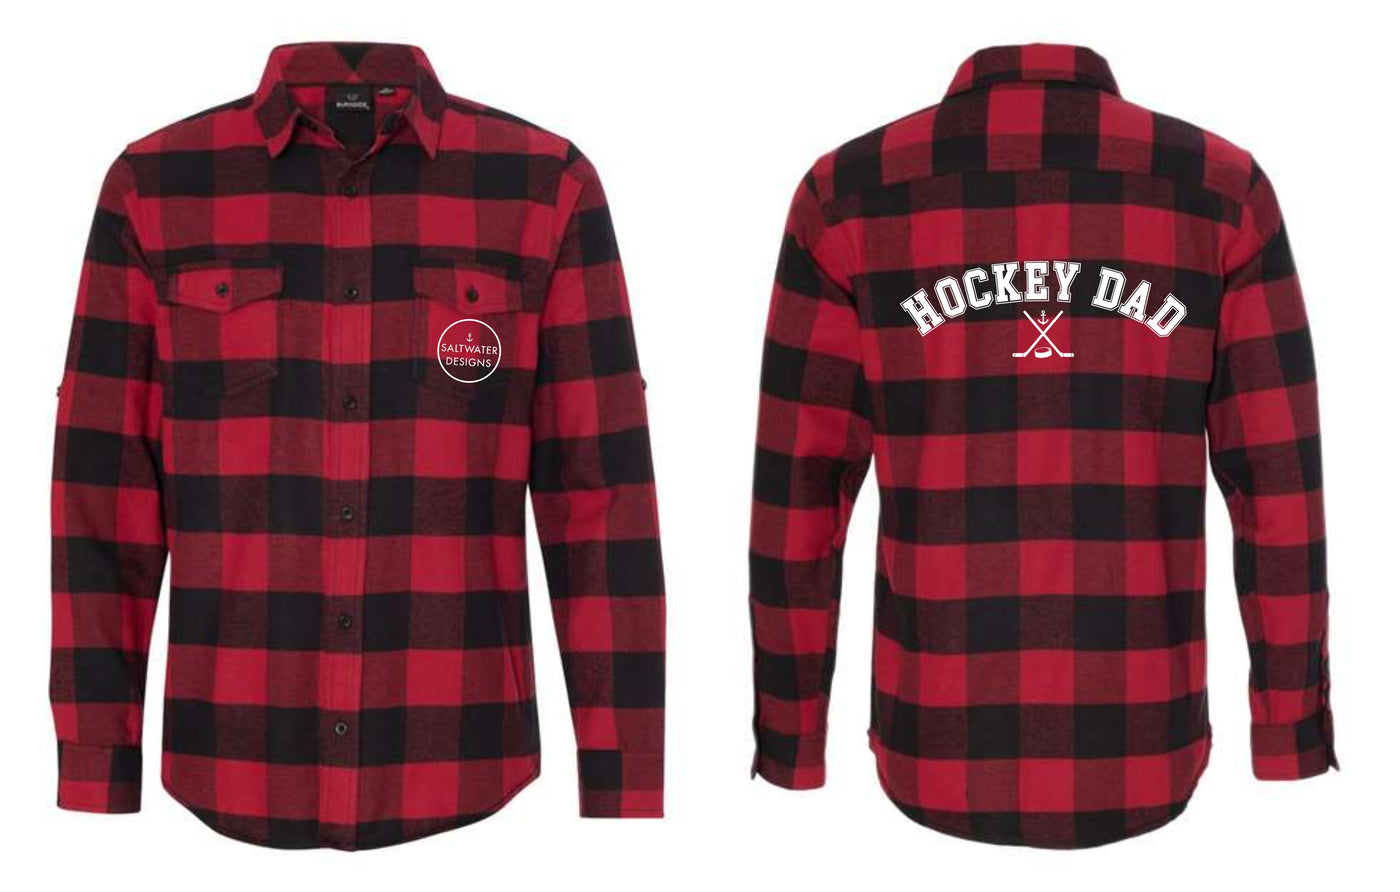 "Hockey Dad" Unisex Plaid Flannel Shirt